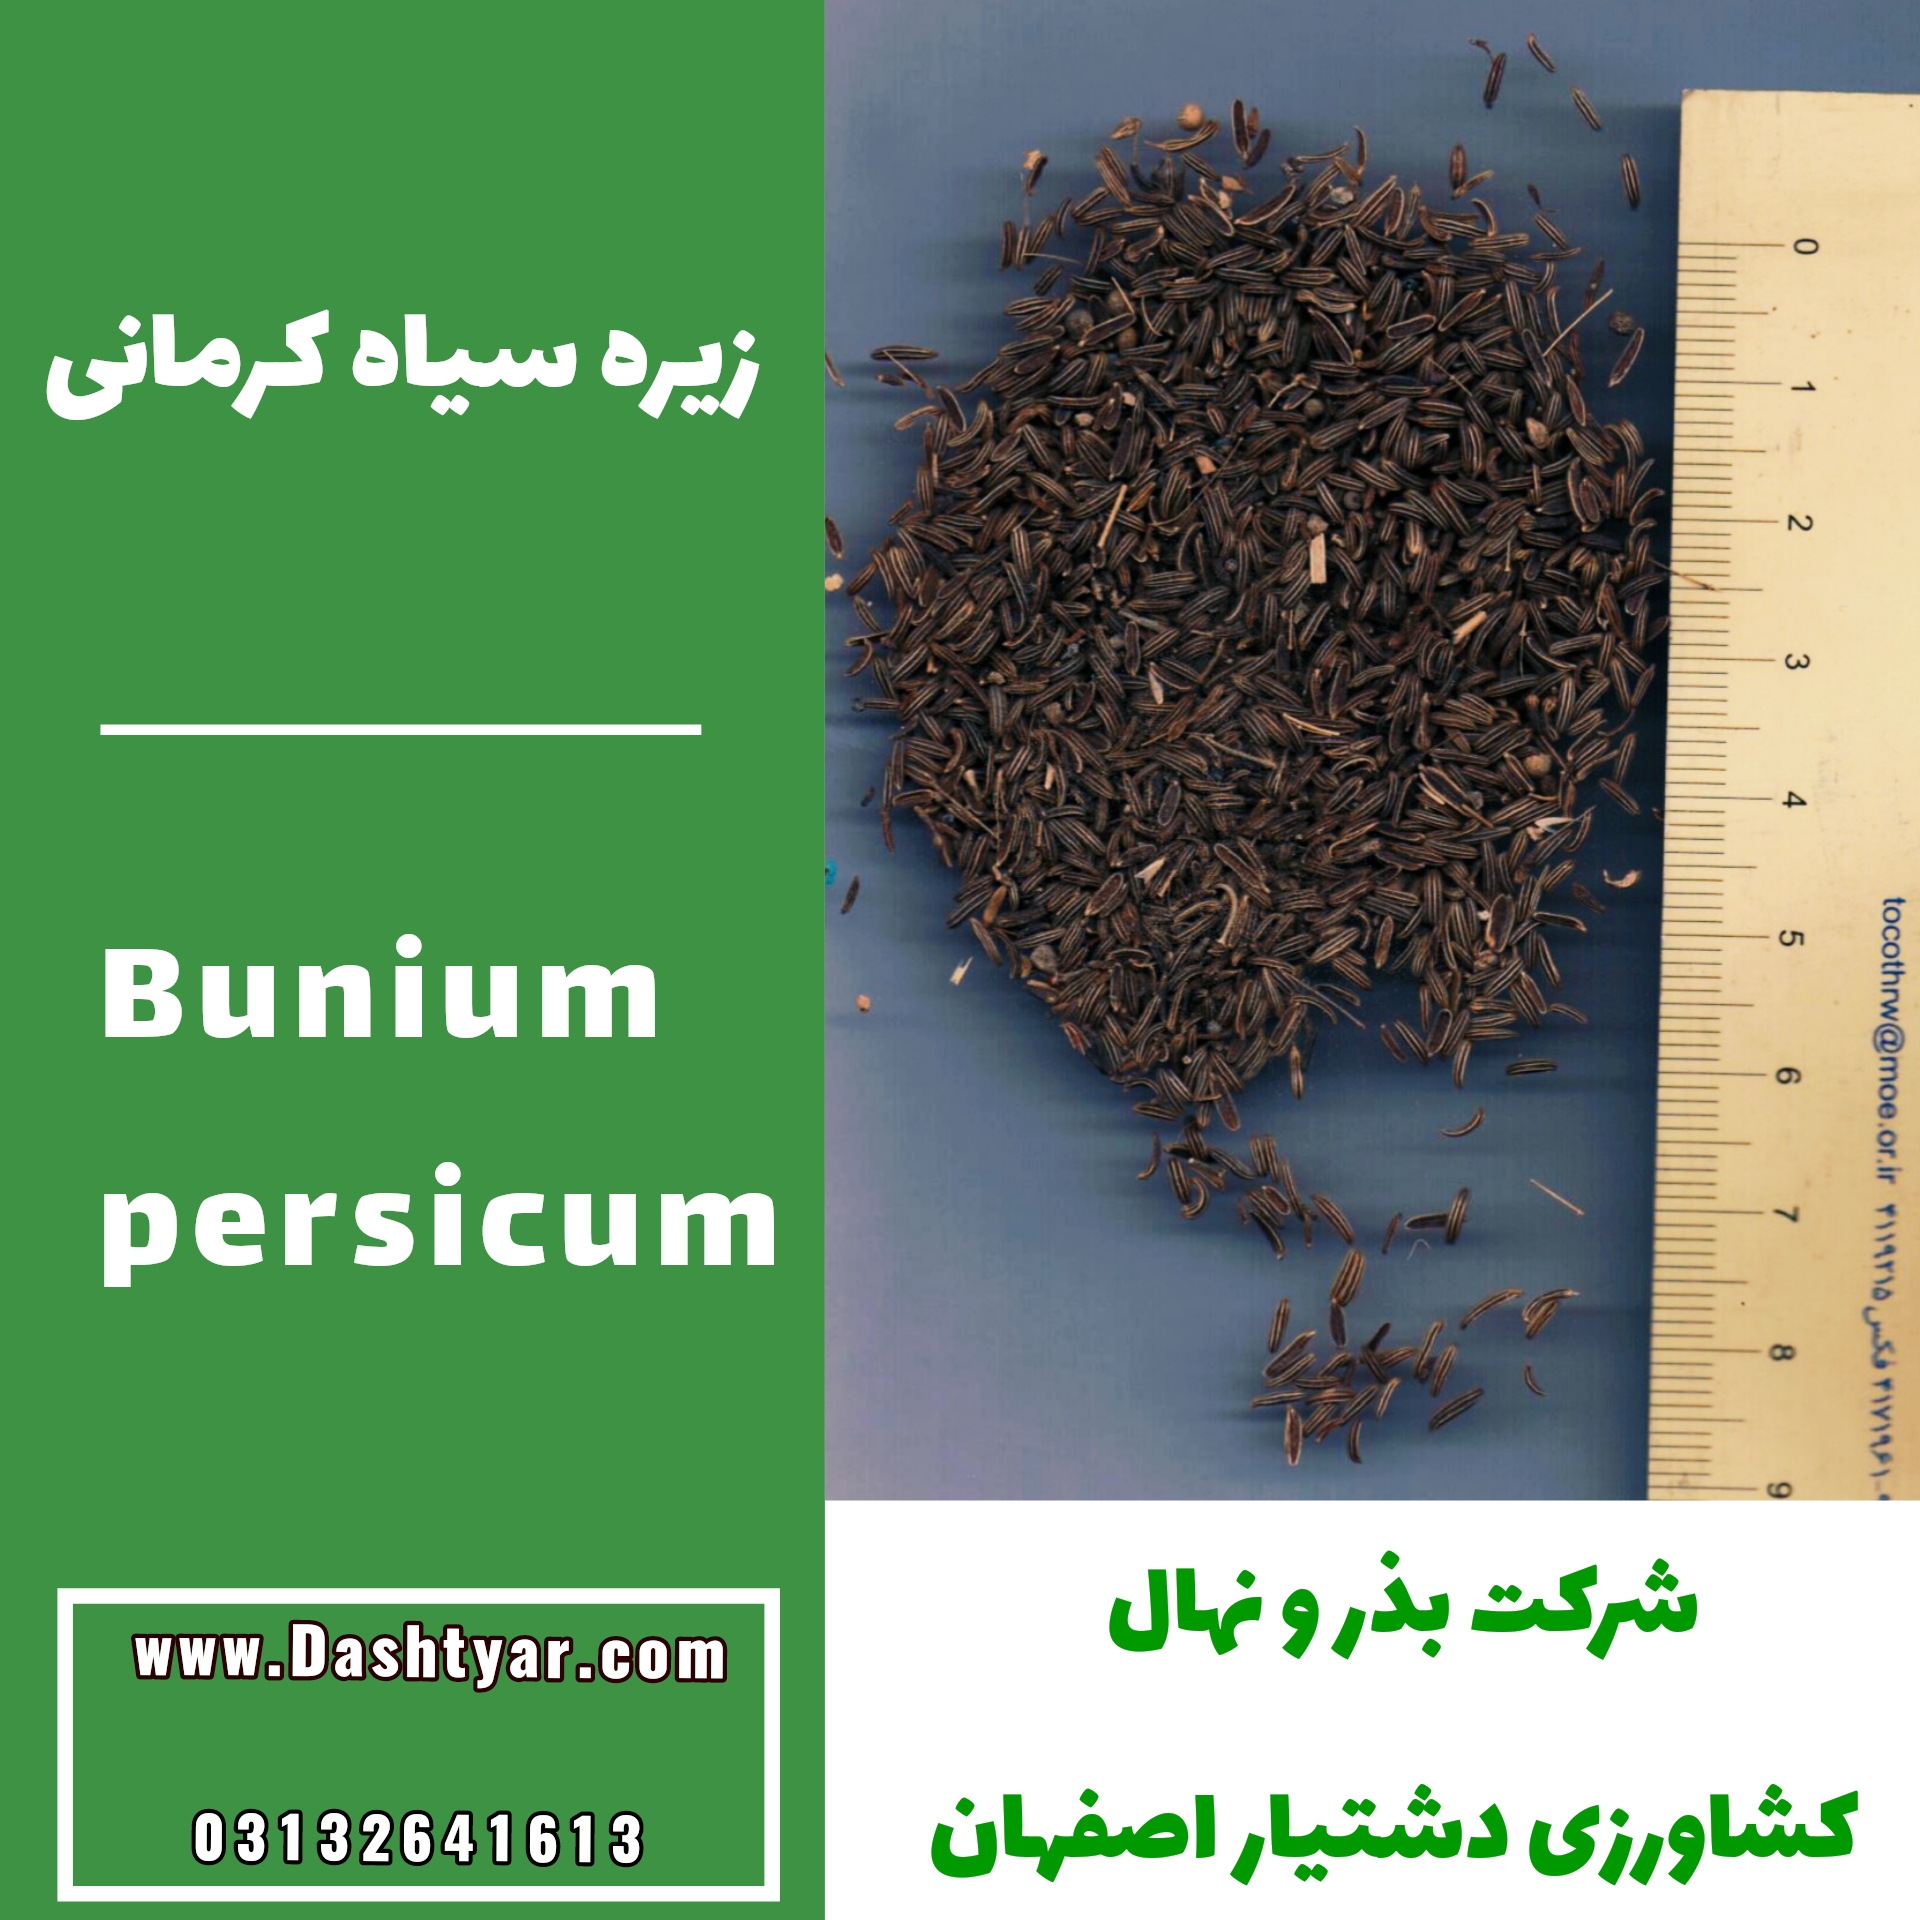 بذر زیره سیاه کرمانی (Bunium persicum)